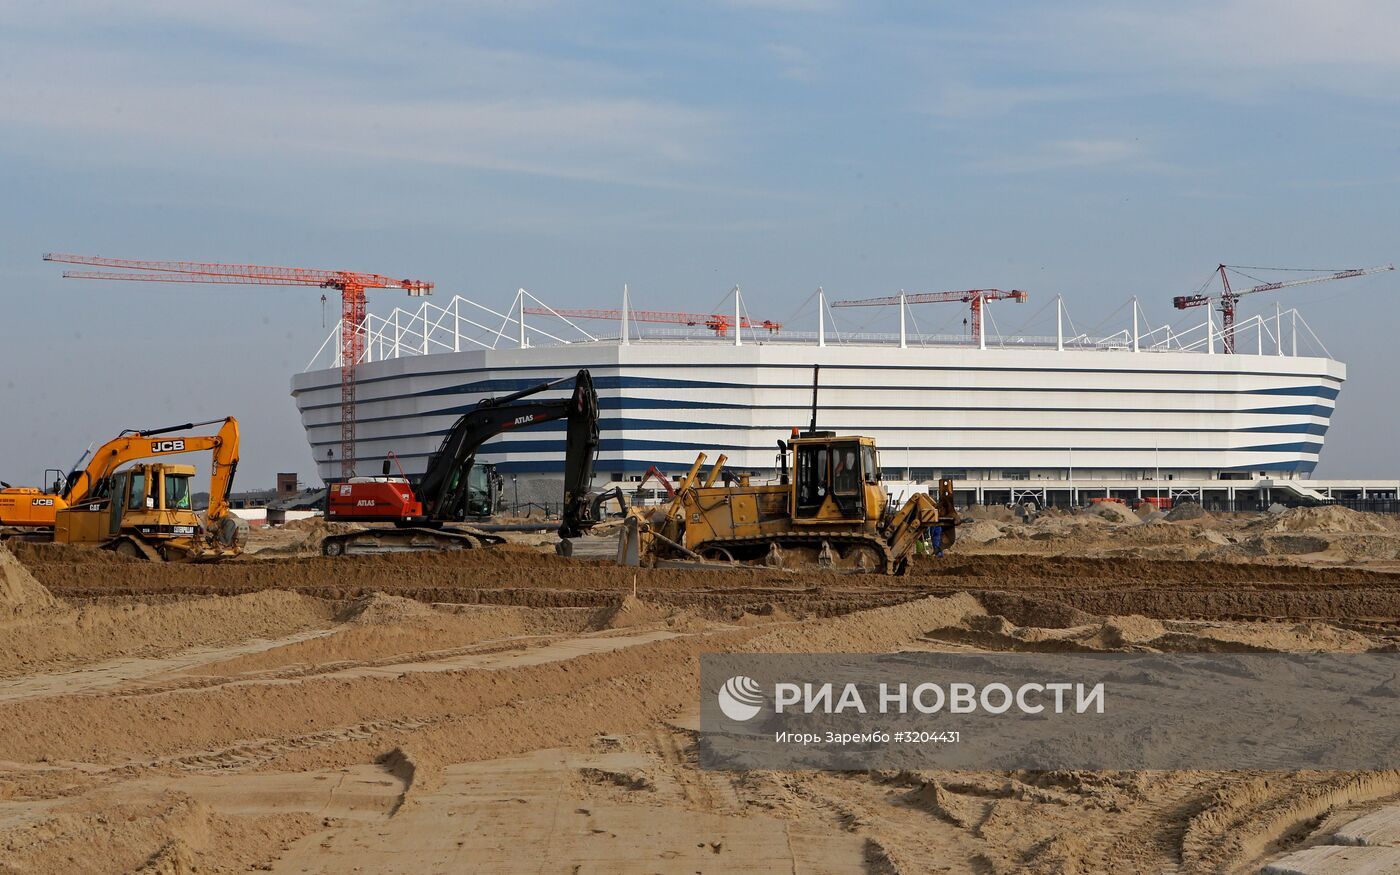 Подготовка к ЧМ-2018 по футболу в Калининграде